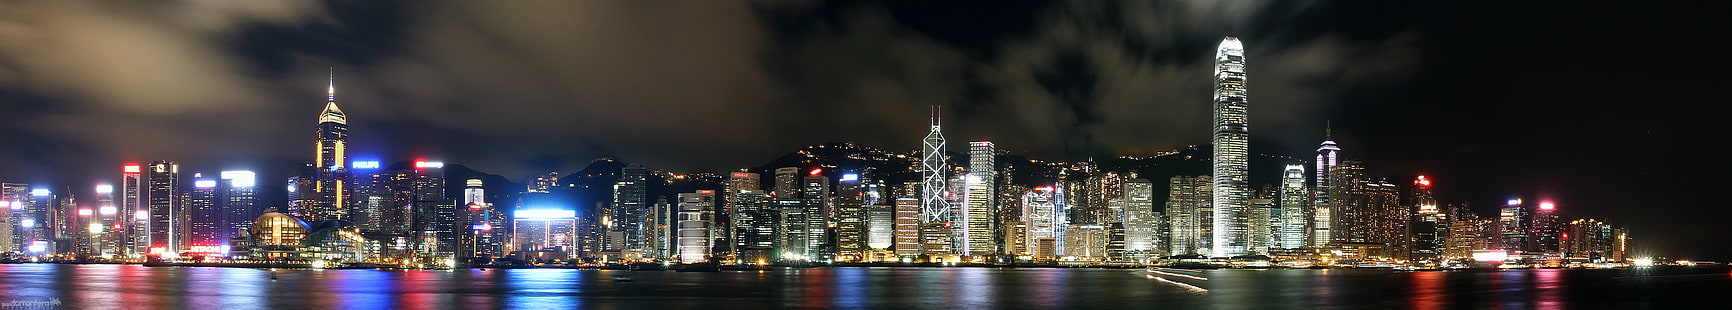 fotografía panorámica de edificios durante la noche, hong kong, hong kong, nocturna, de Hong, Hong Kong, panorama, fotografía, edificios, noche, asia, china, panorámica, paisaje, ciudad, horizonte, río, río, agua,reflexiones, urbano, sorprendente, capitalismo, largo, largo, engranaje, yo mi, premium, paisaje urbano, horizonte urbano, rascacielos, escena urbana, distrito céntrico, lugar famoso, arquitectura, puerto, iluminado, Fondo de pantalla HD HD wallpaper